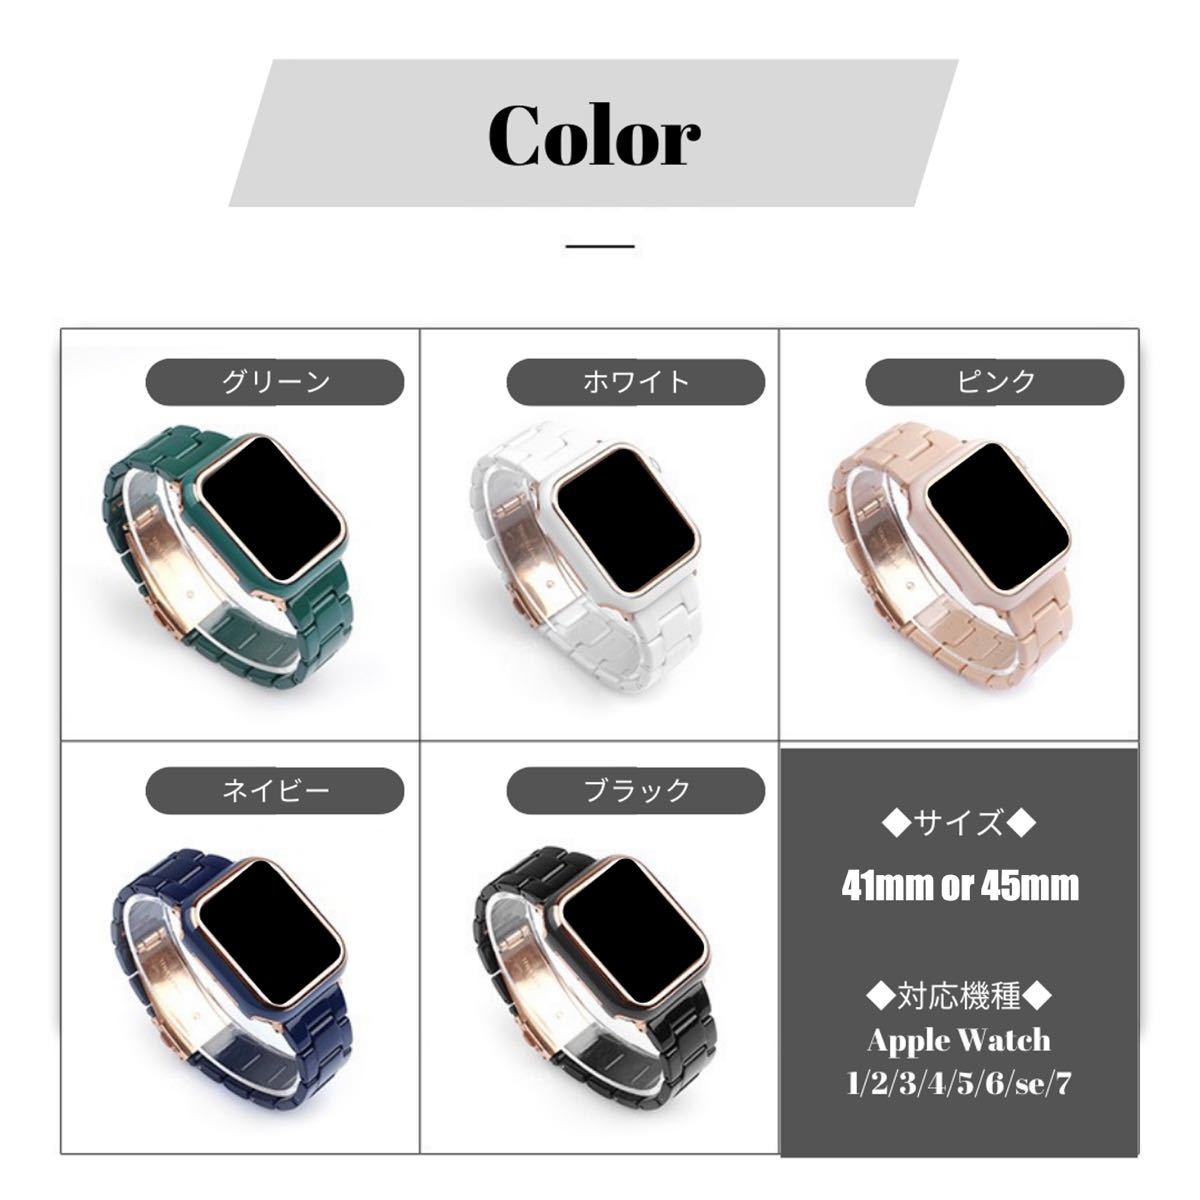 ☆Apple Watch アップル ウォッチ プラスチック 文字盤 ケース カバー 45mm グリーン+ゴールド☆